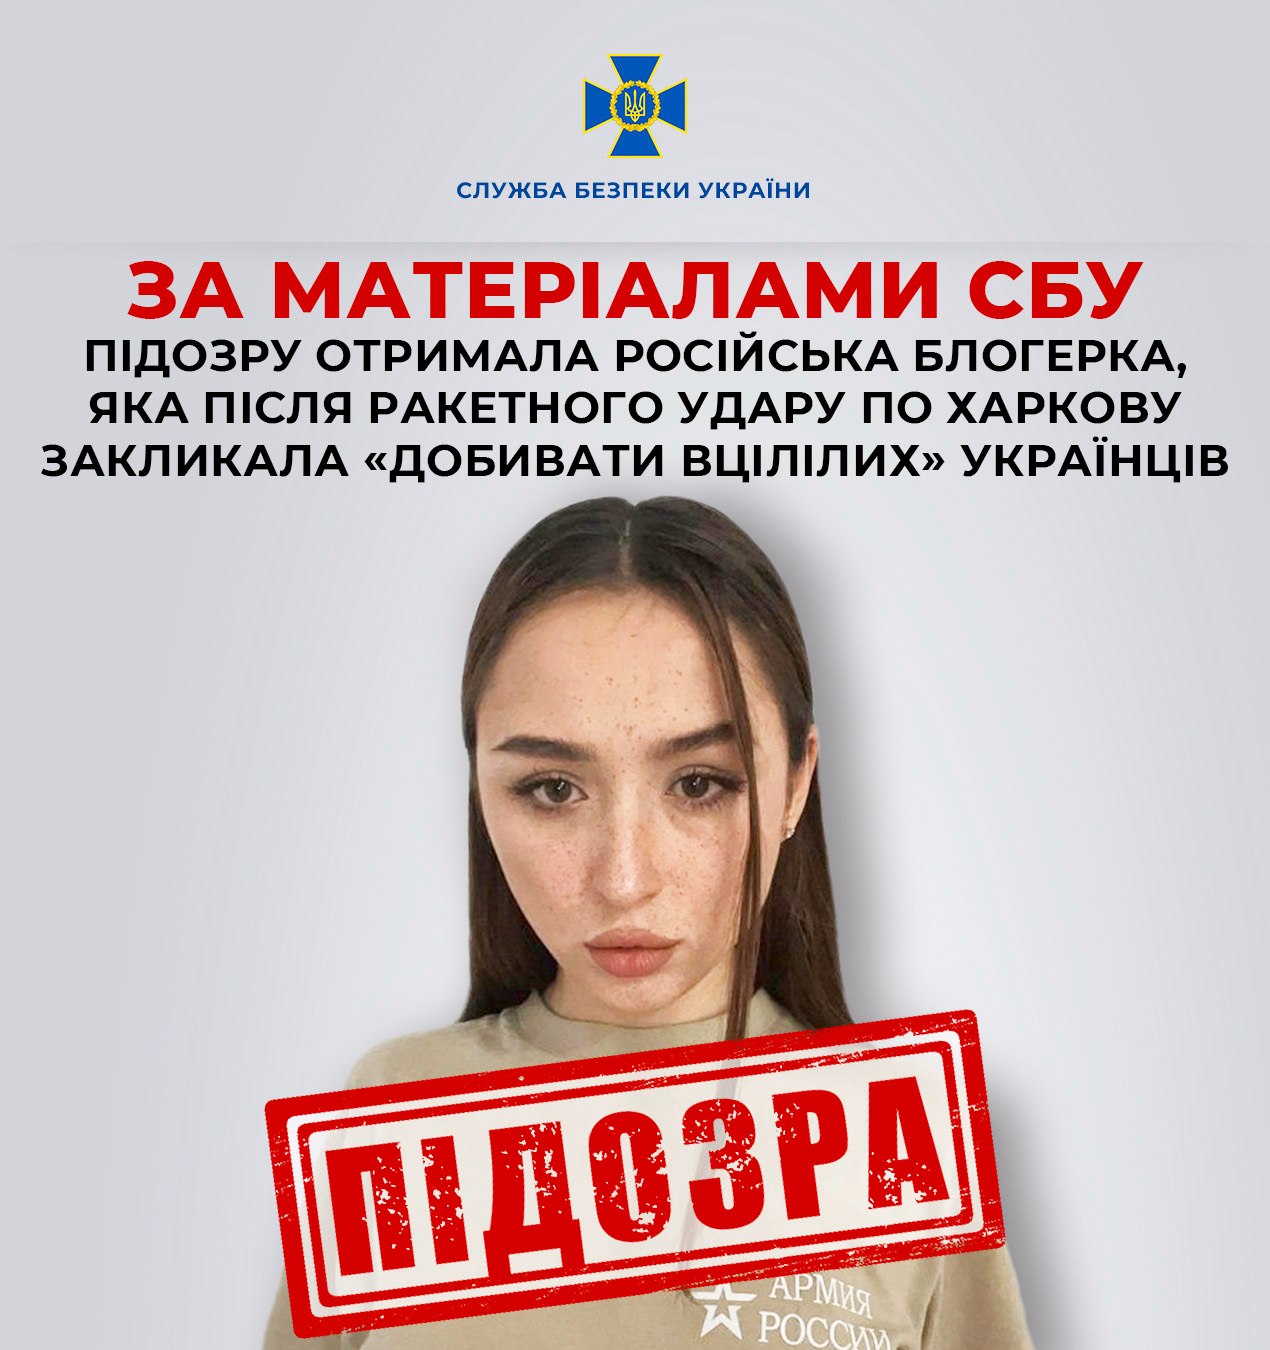 СБУ объявила подозрение российской блогерше, она призывала "добивать украинцев" в Харькове